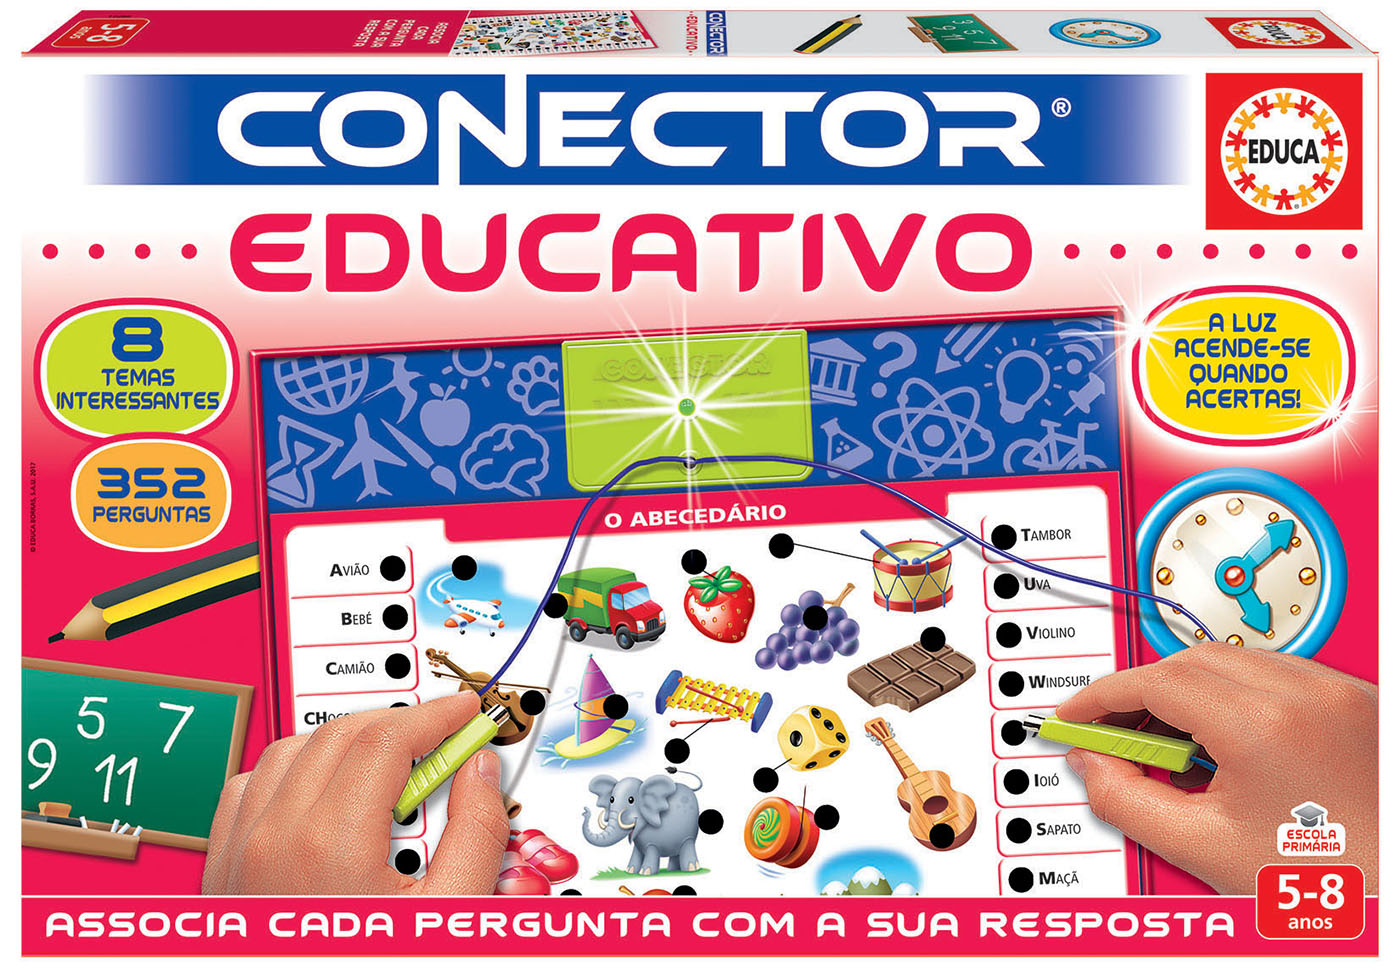 Conector® Educativo